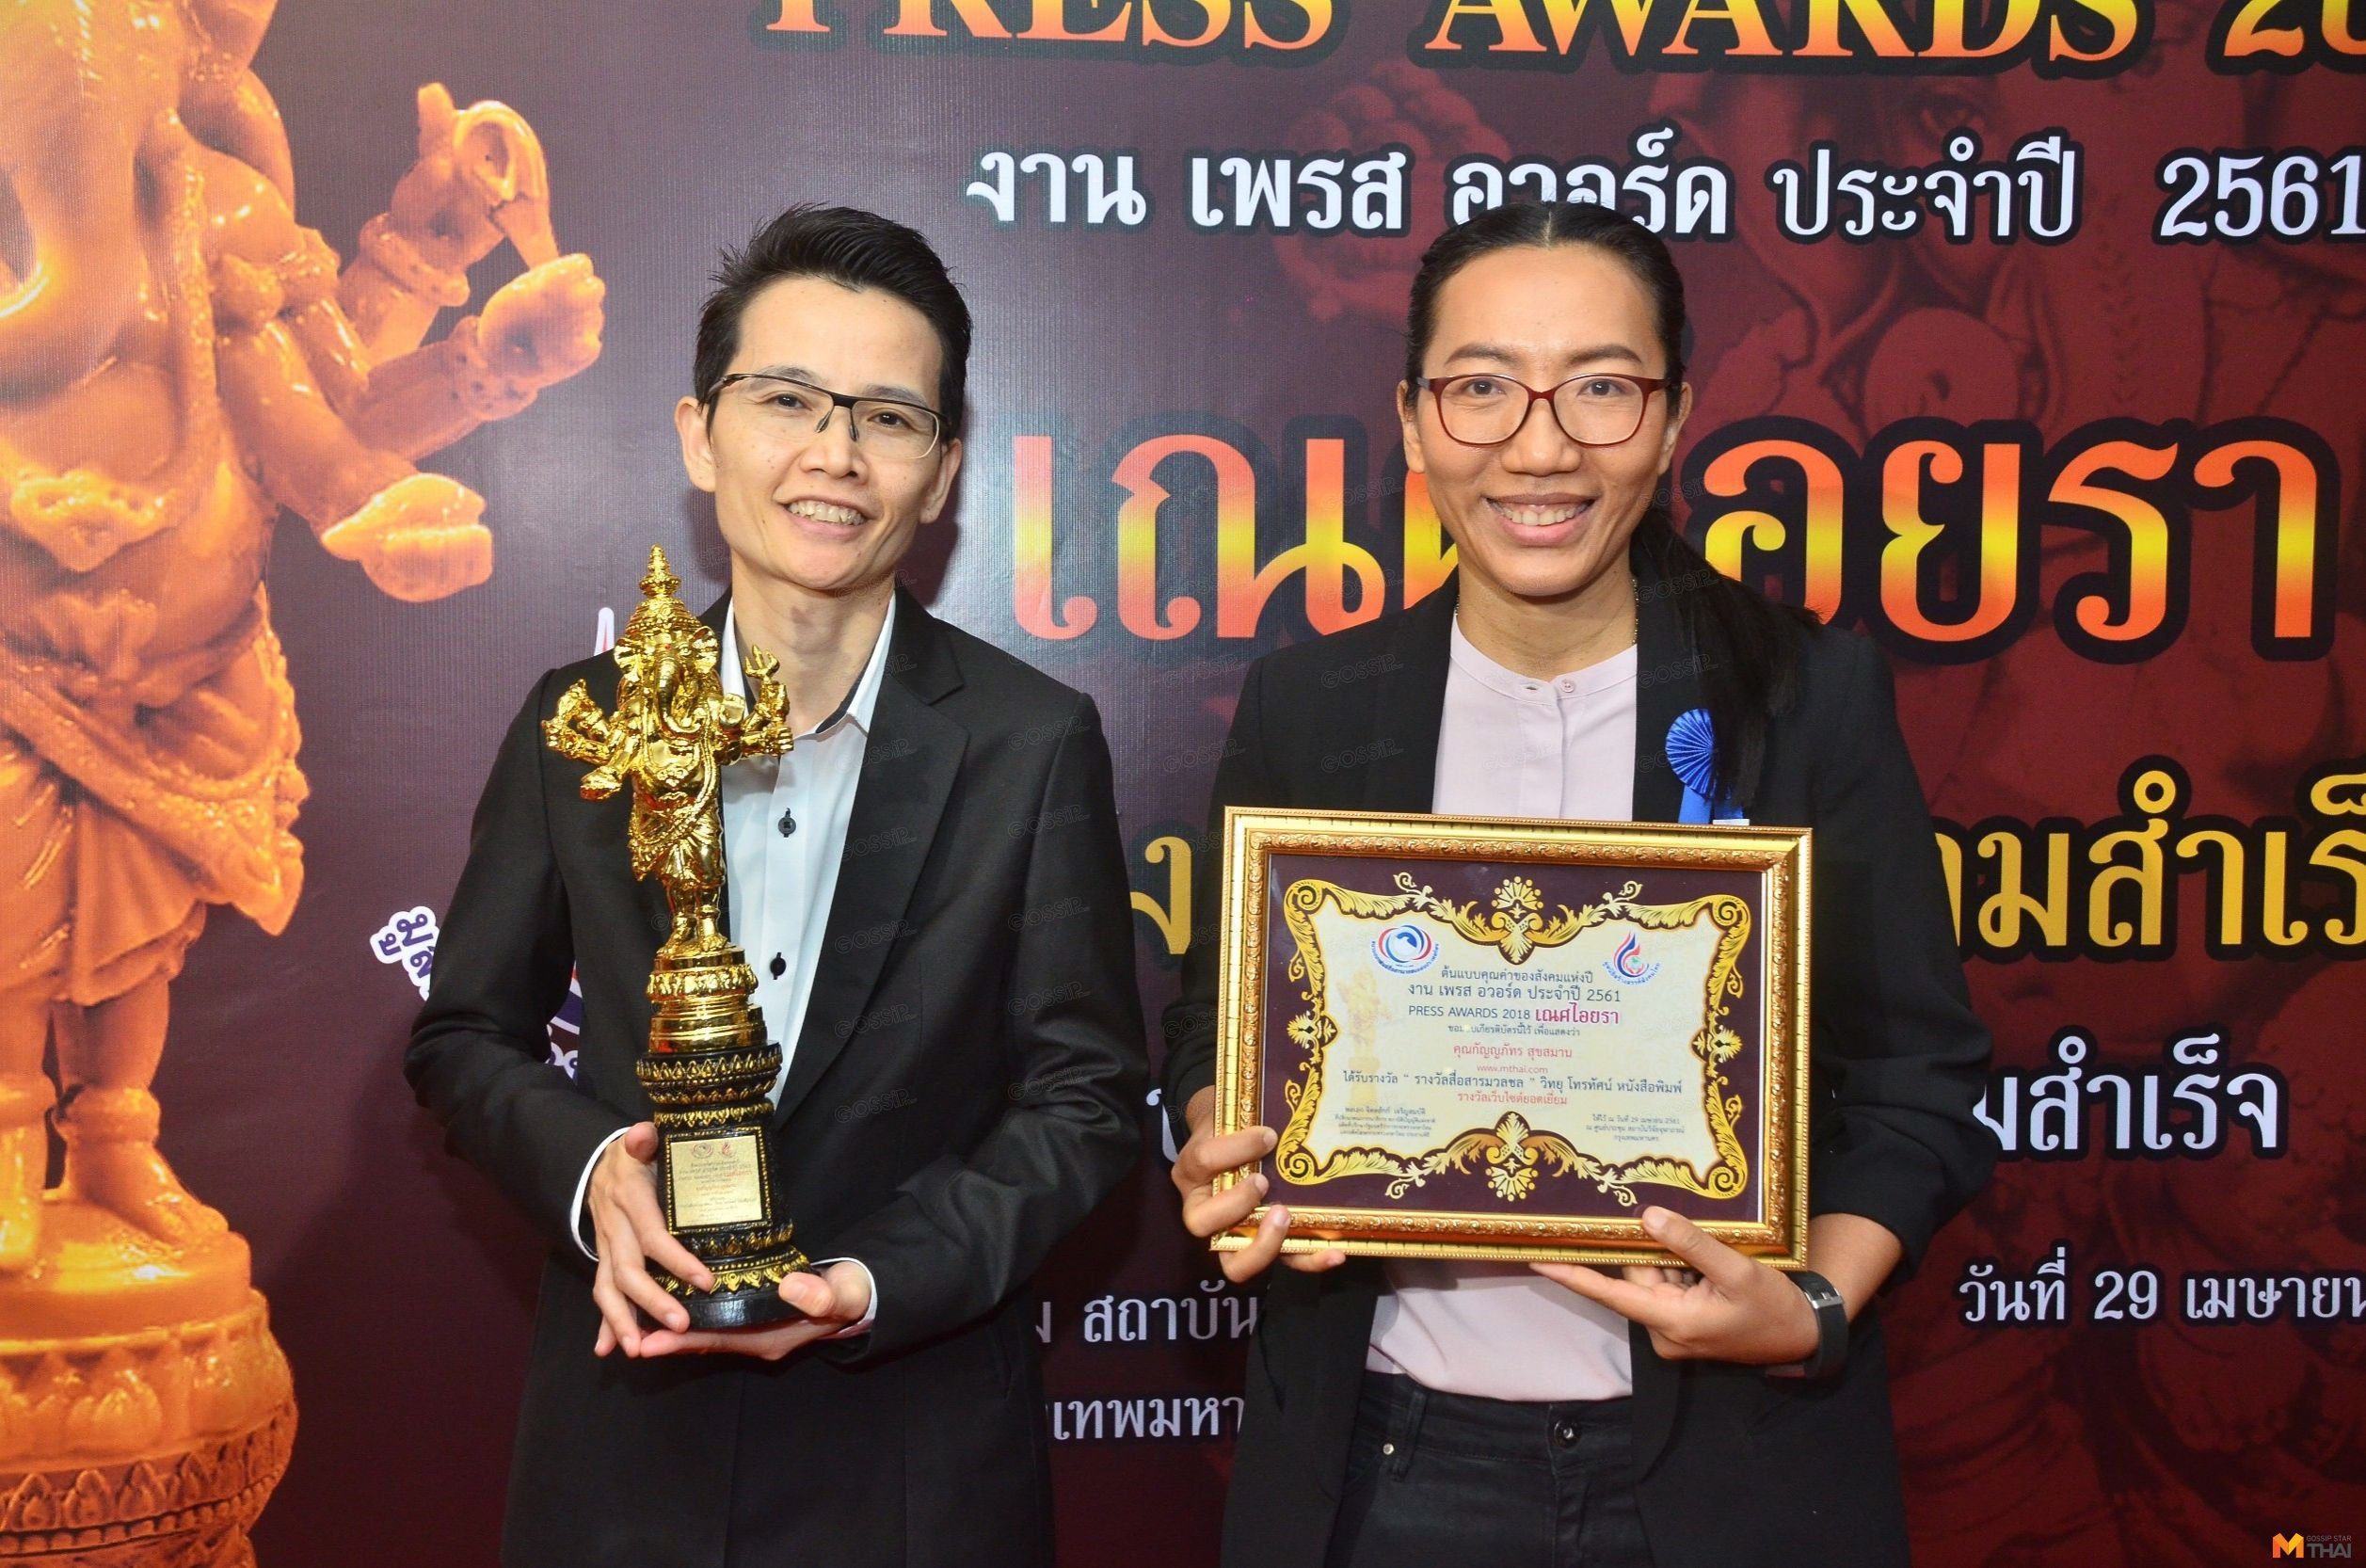 รางวัลเว็บไซต์ยอดเยี่ยม www.mthai.com ผู้รับรางวัล : คุณกัญญภัทร สุขสมาน 